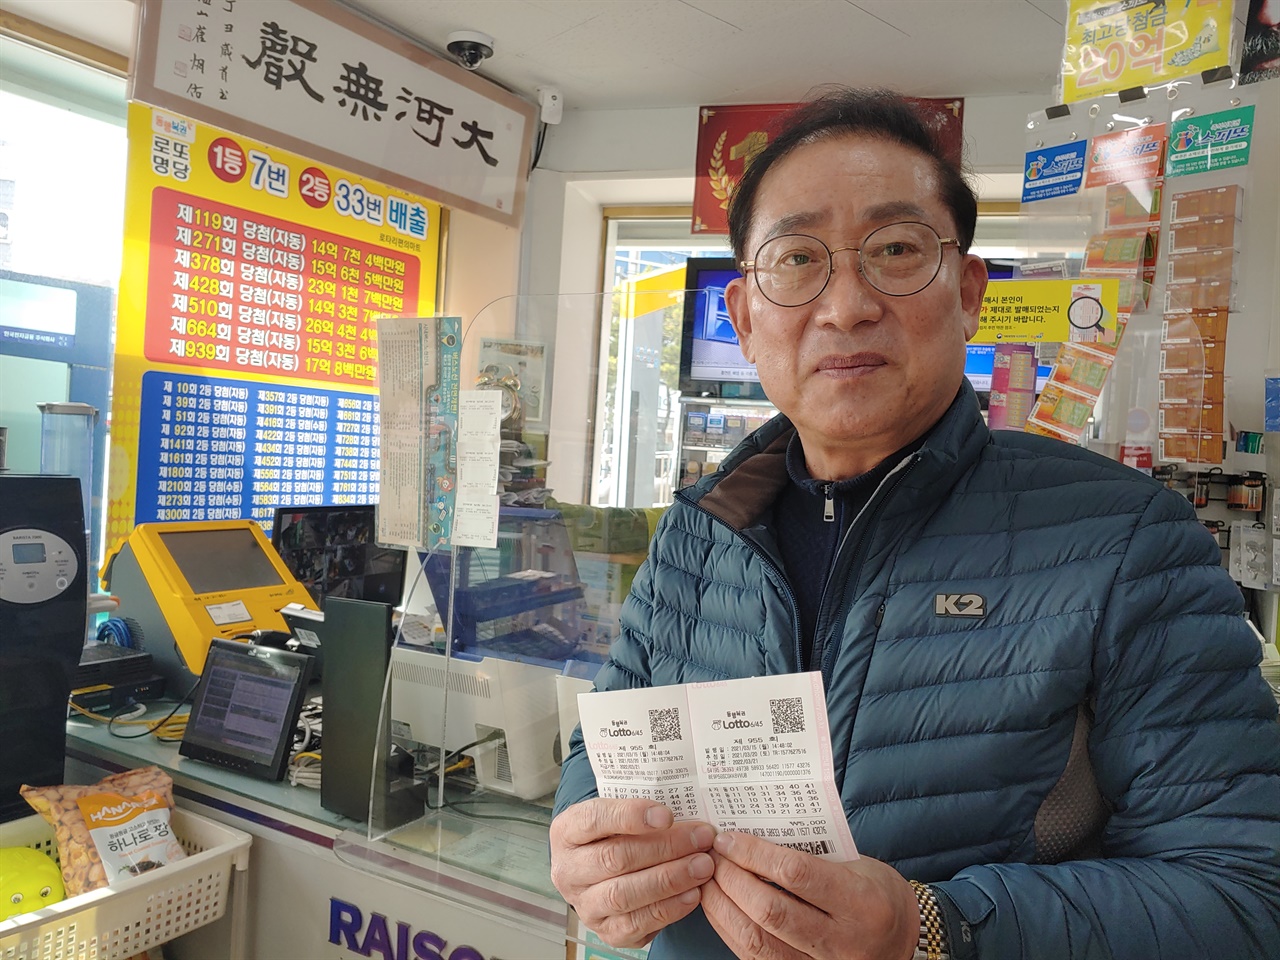 로또 1등 당첨자가 7명 나온 판매점을 운영하는 이두성 씨는 "복권에 과도하게 몰입하는 건 좋지 않다"고 충고한다.